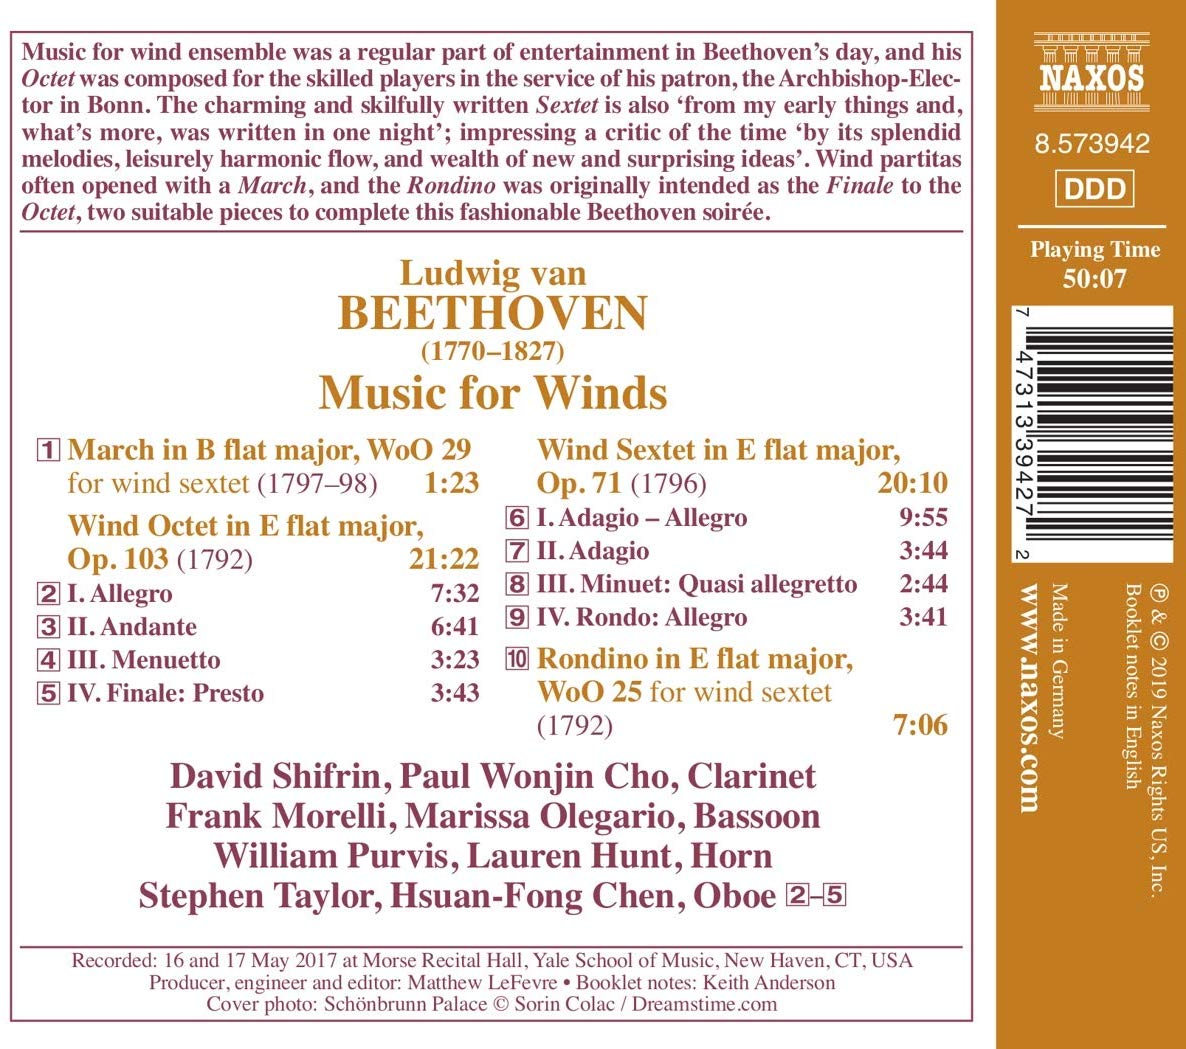 베토벤: 관악기를 위한 음악 (Beethoven: Music for Winds)